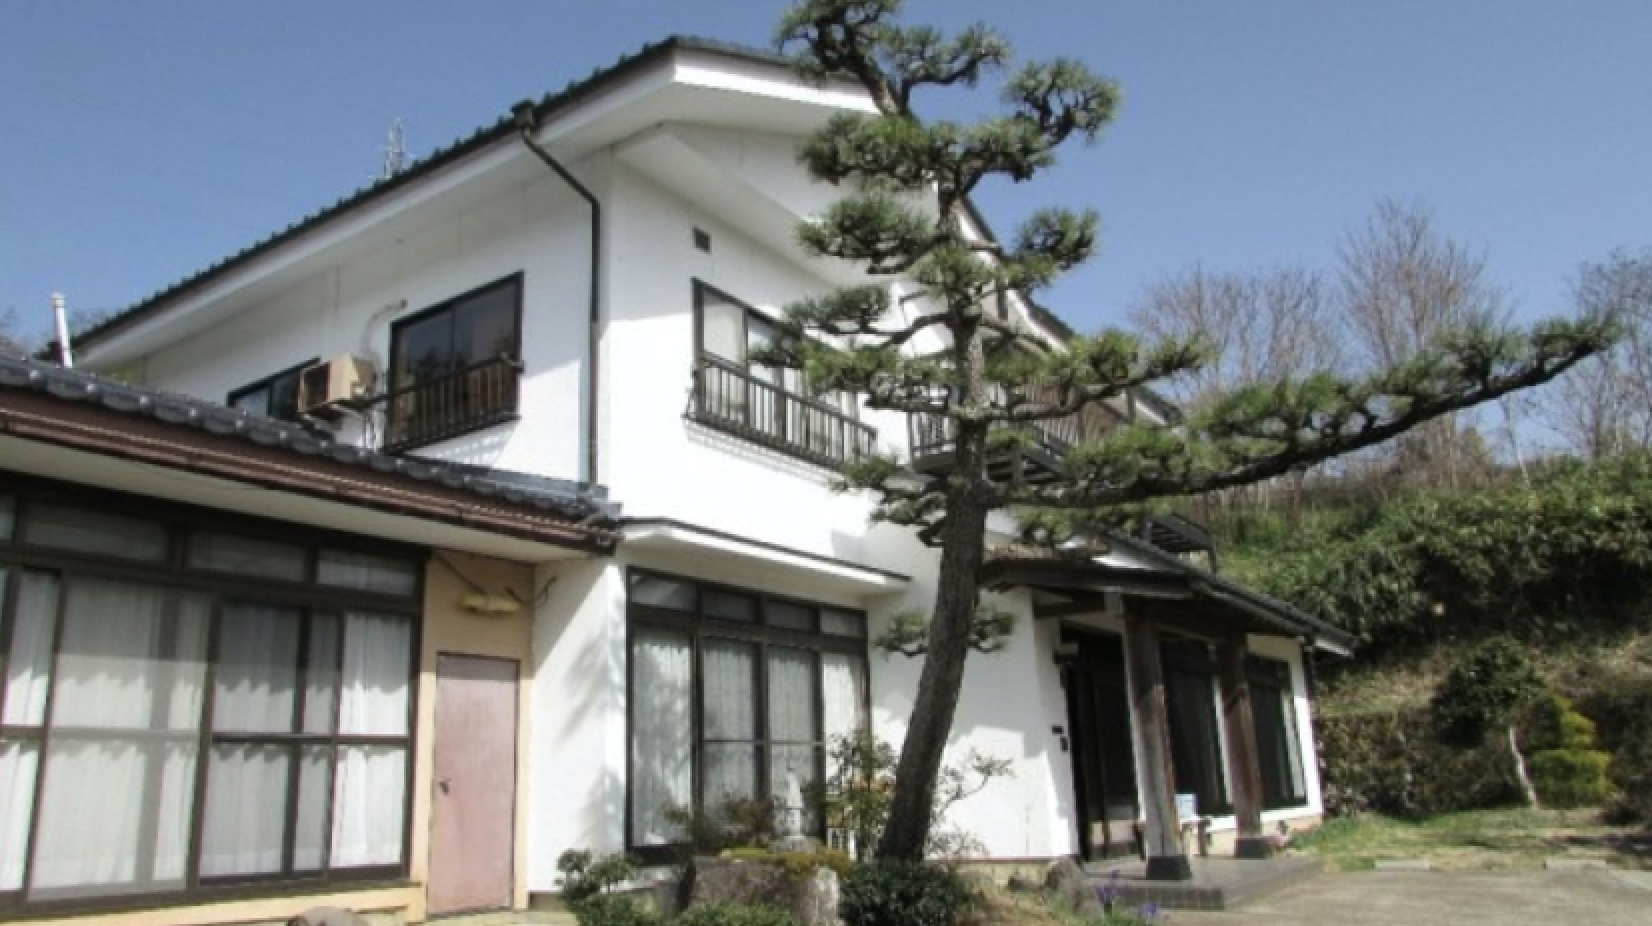 Sabías que con 500 dólares puedes comprar una casa en Japón?